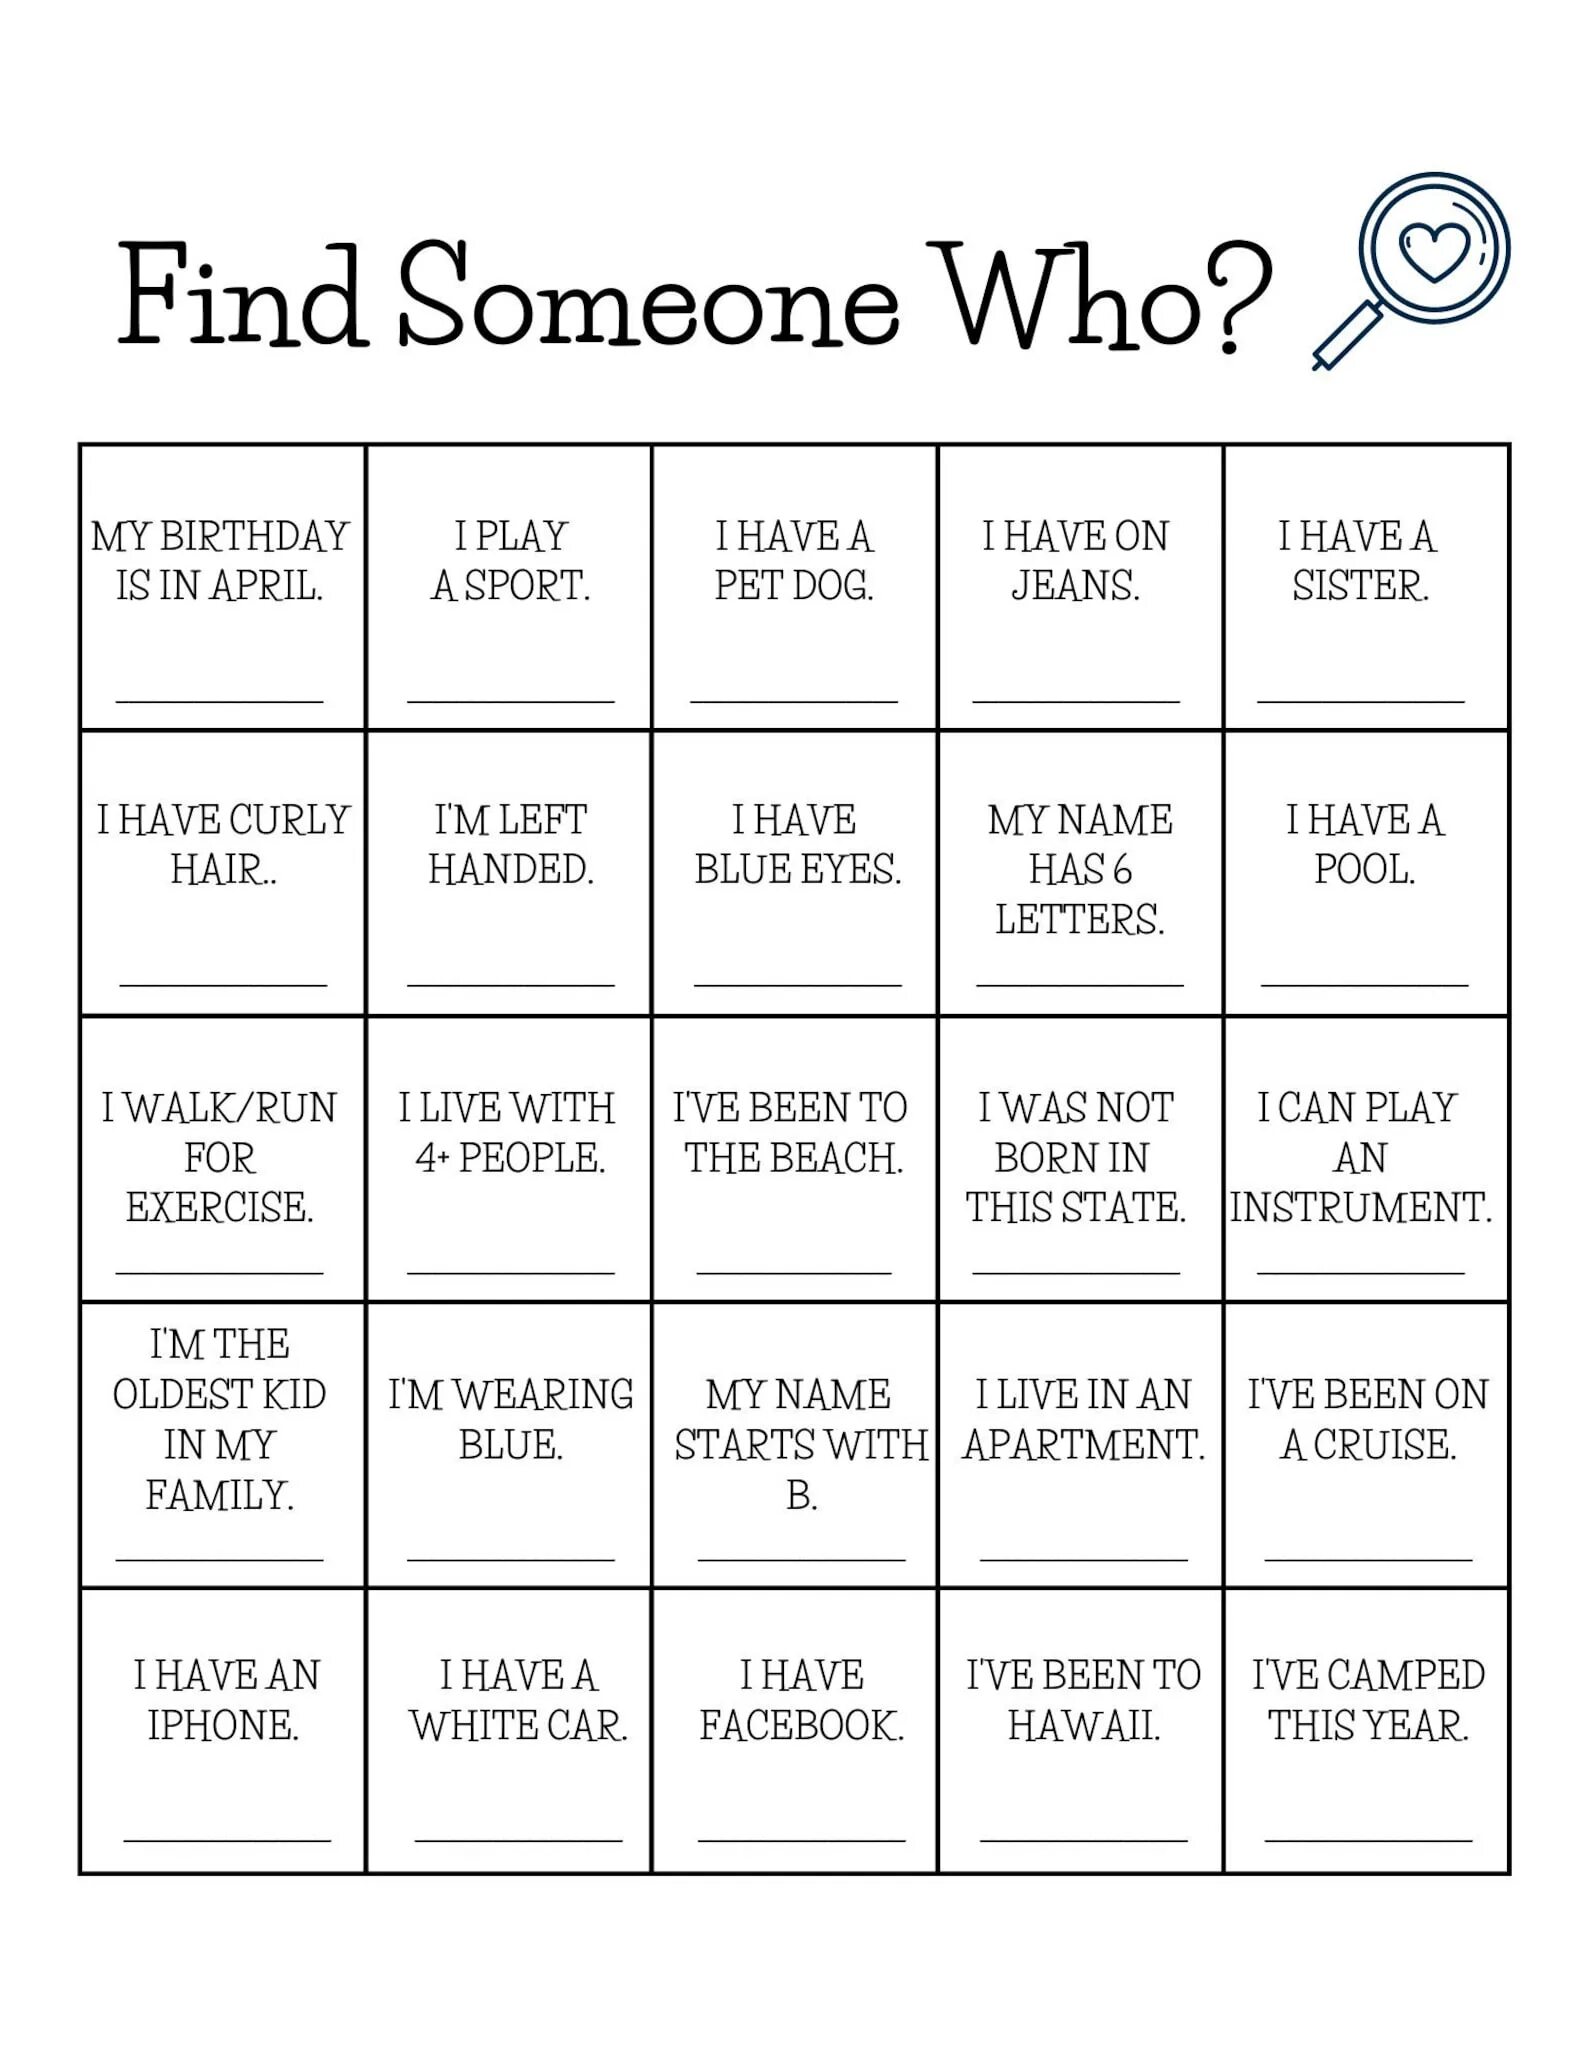 Find someone like. Find someone who. Find someone who for Kids. Find someone who game. Find someone who Bingo.